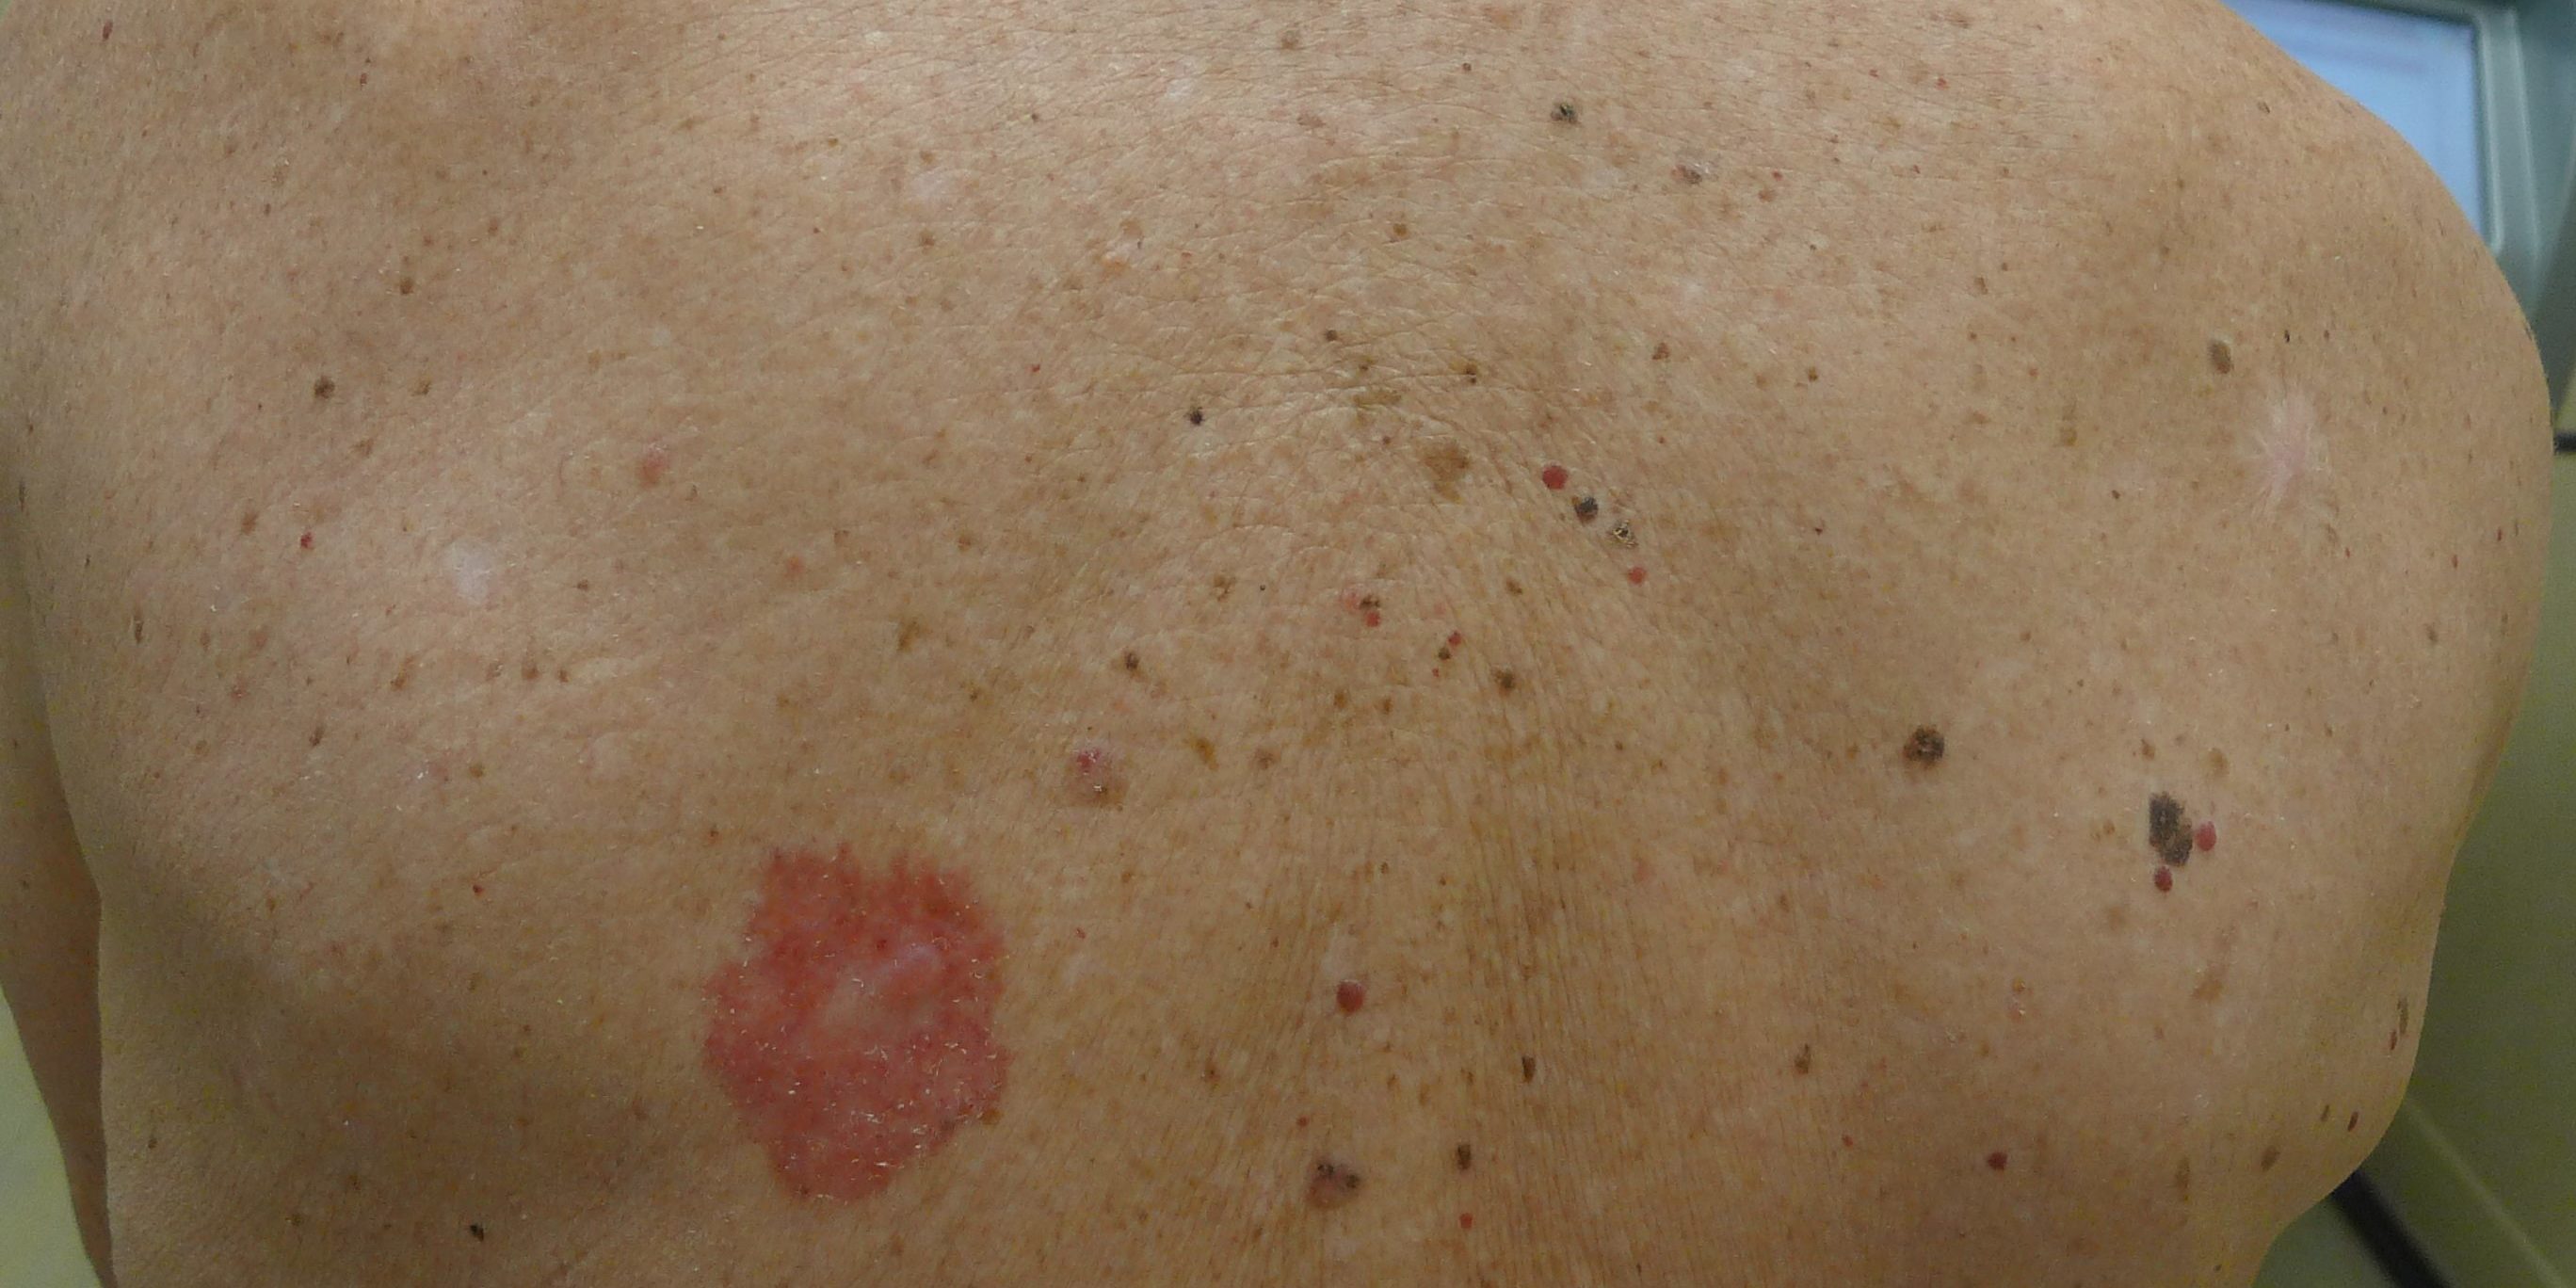 Skin Cancer On Back  2736x1368 